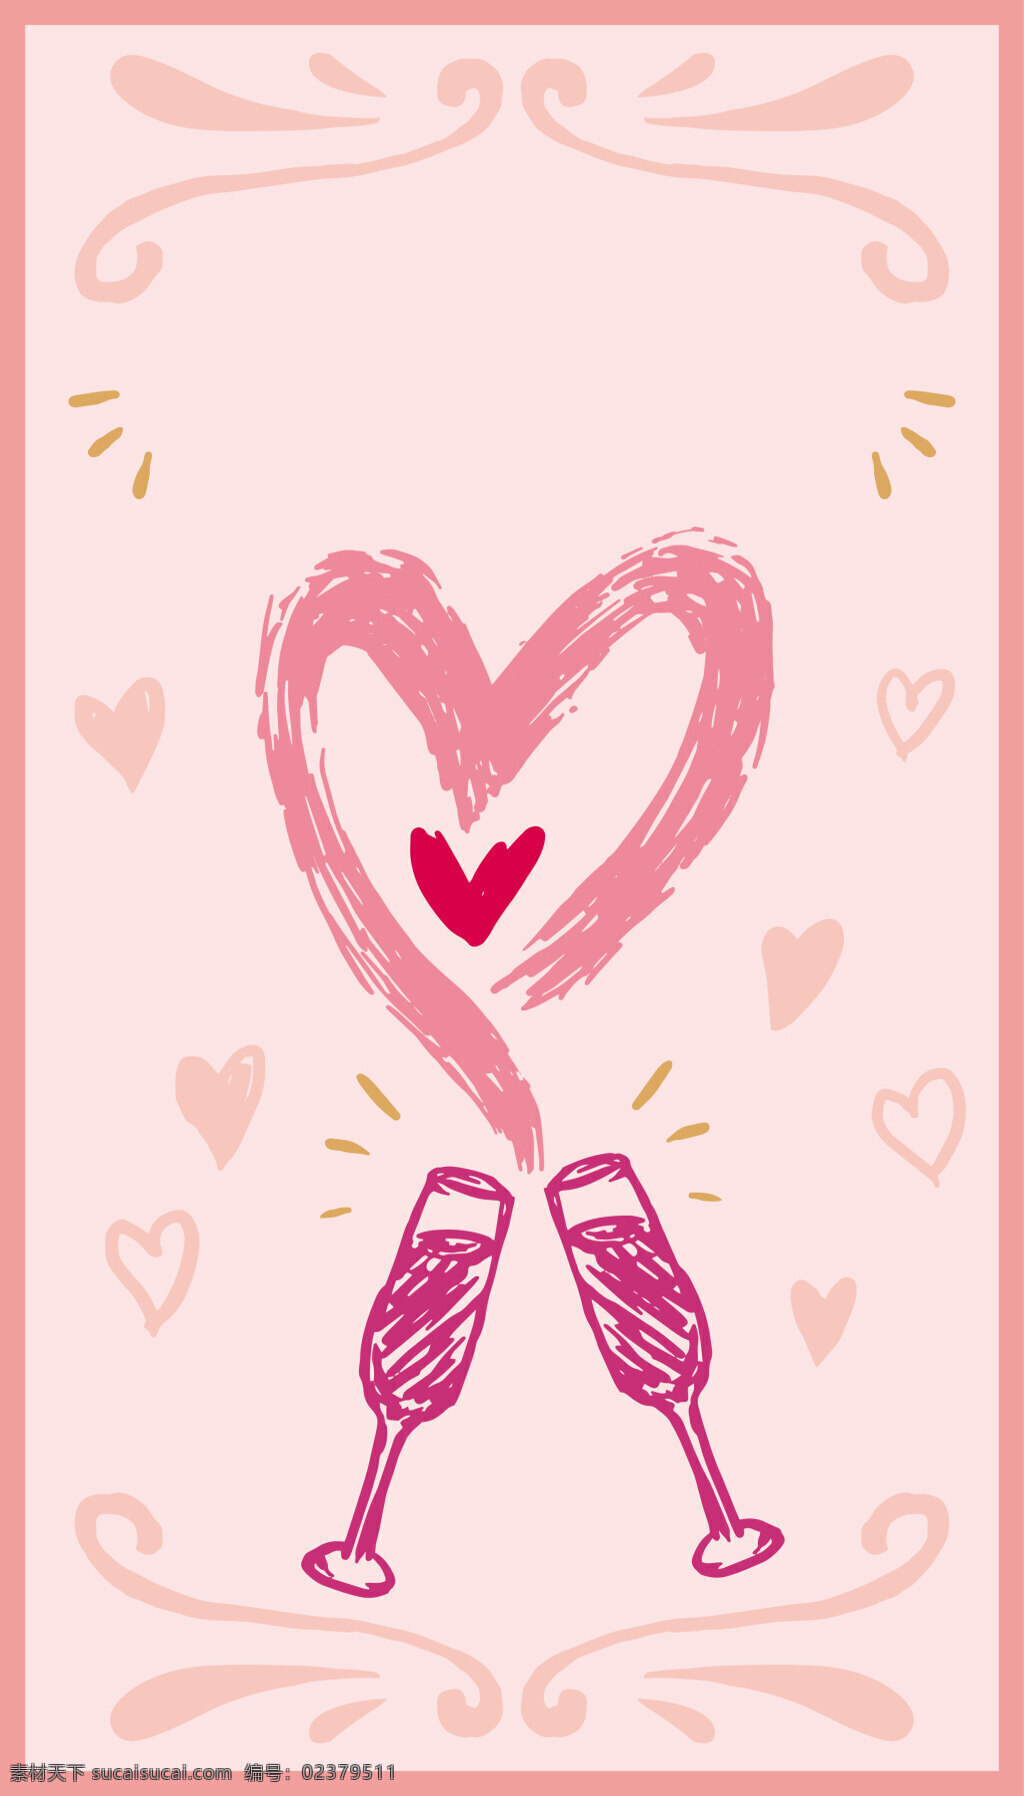 创意 手绘 粉色 爱心 矢量 背景 520 情人节 海报 促销海 粉色爱心 婚礼展板 酒杯 情人节海报 童趣 心形底纹